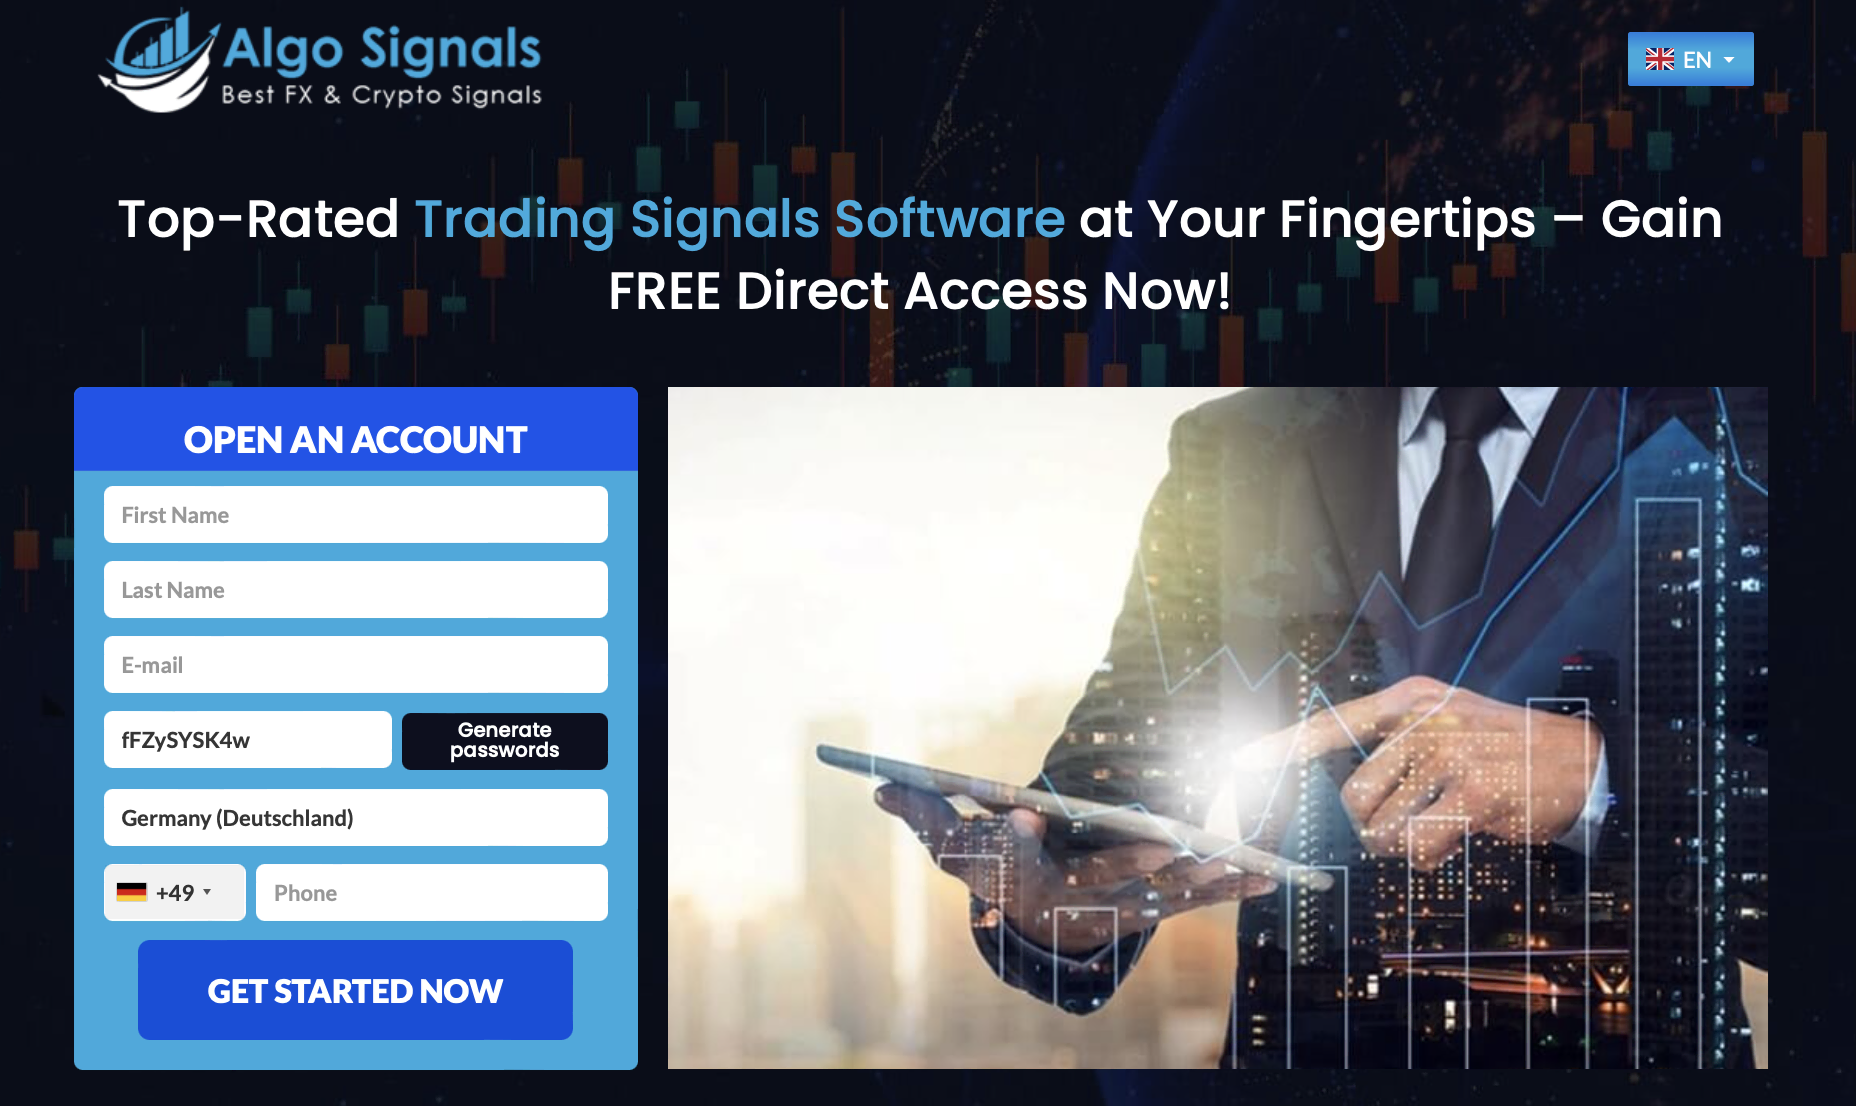 O site oficial do Algo Signals